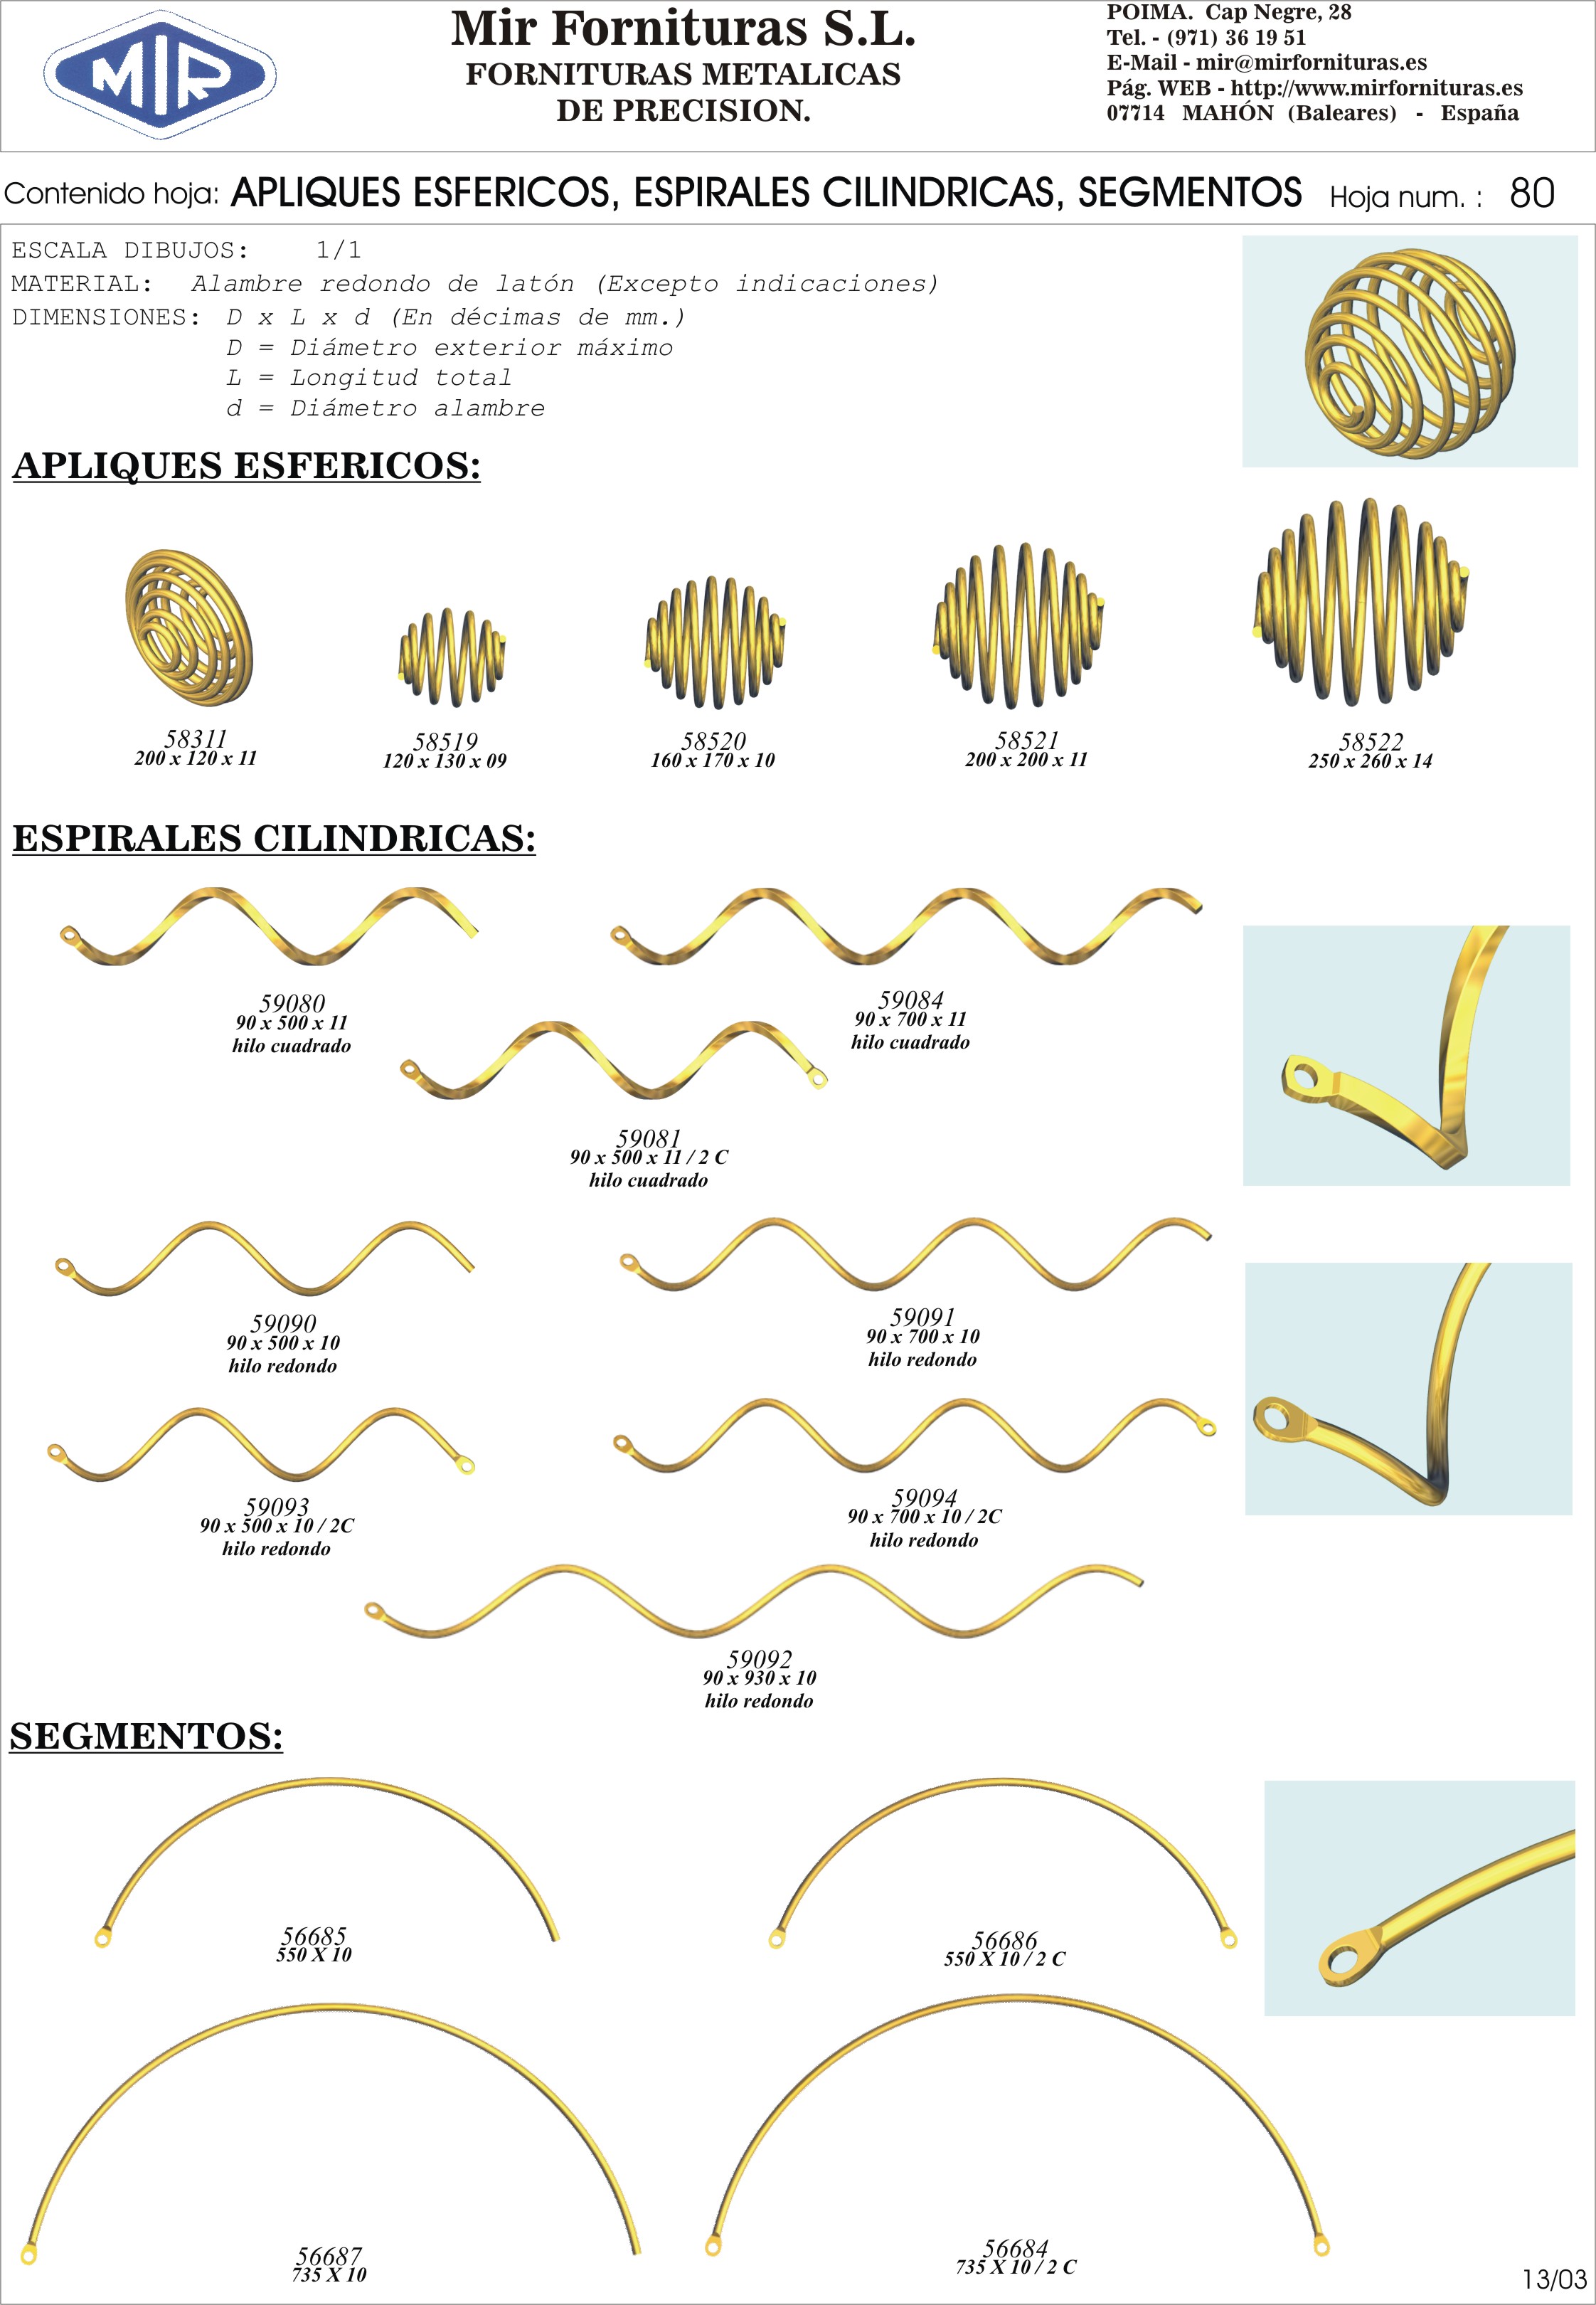 Mir Fornituras, S. L. Apliques esfericos, espirales cilindricas, segmentos